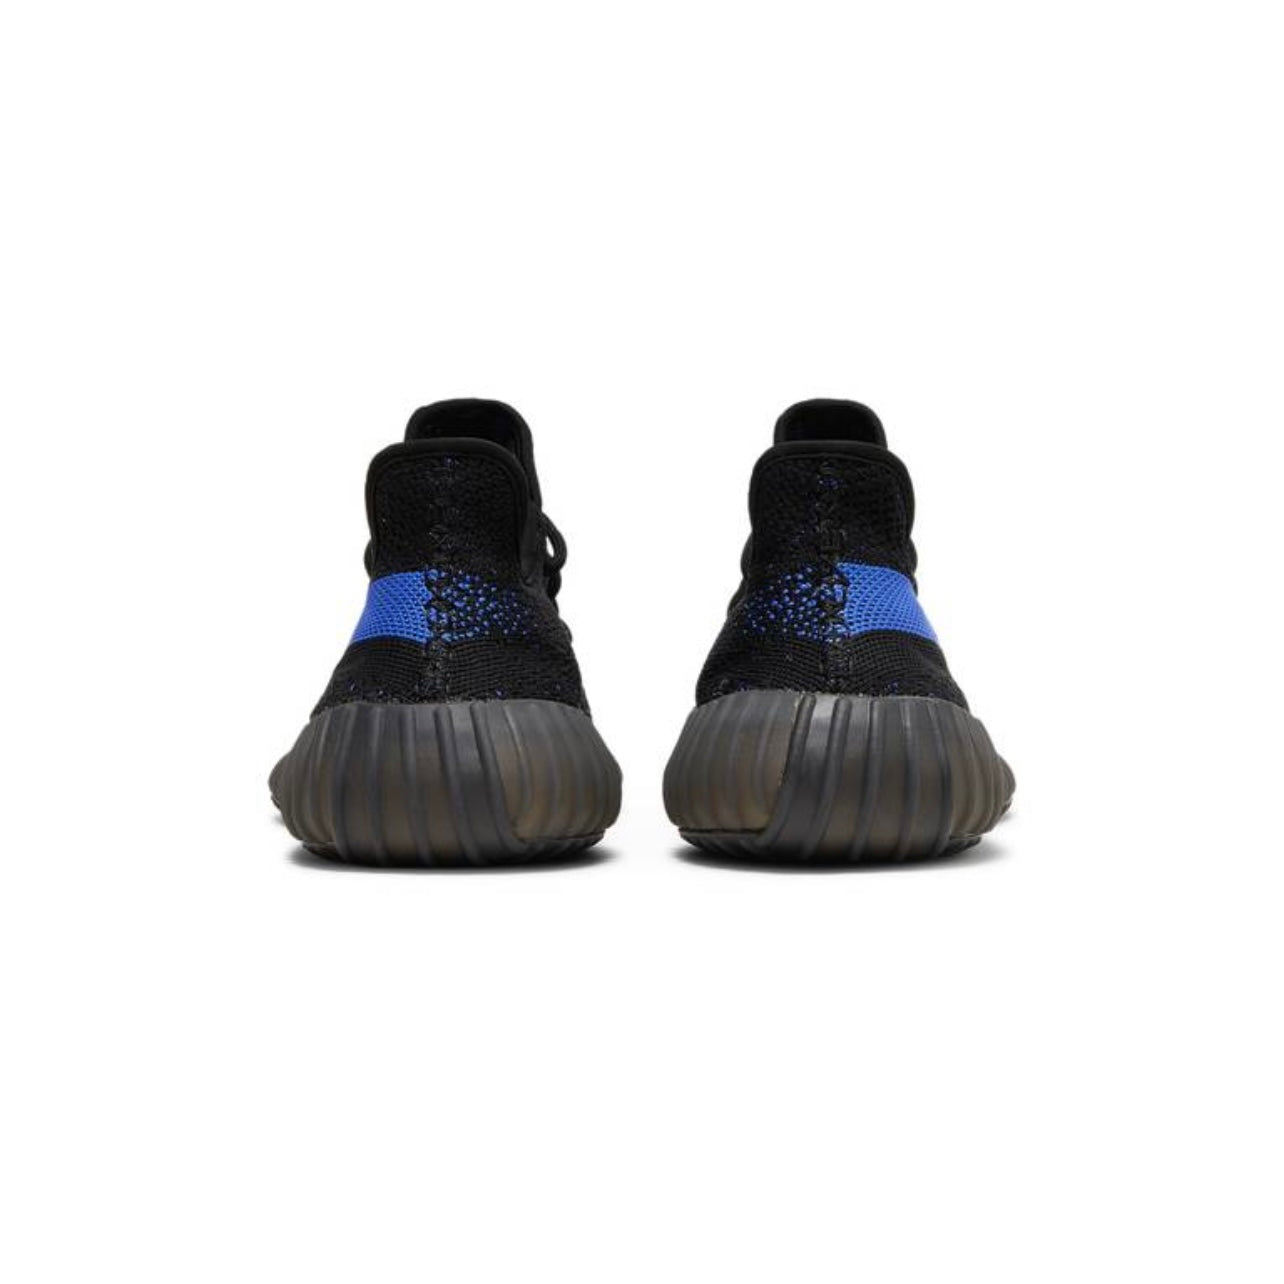 Adidas Yeezy Boost 350 V2 "Dazzling blue"